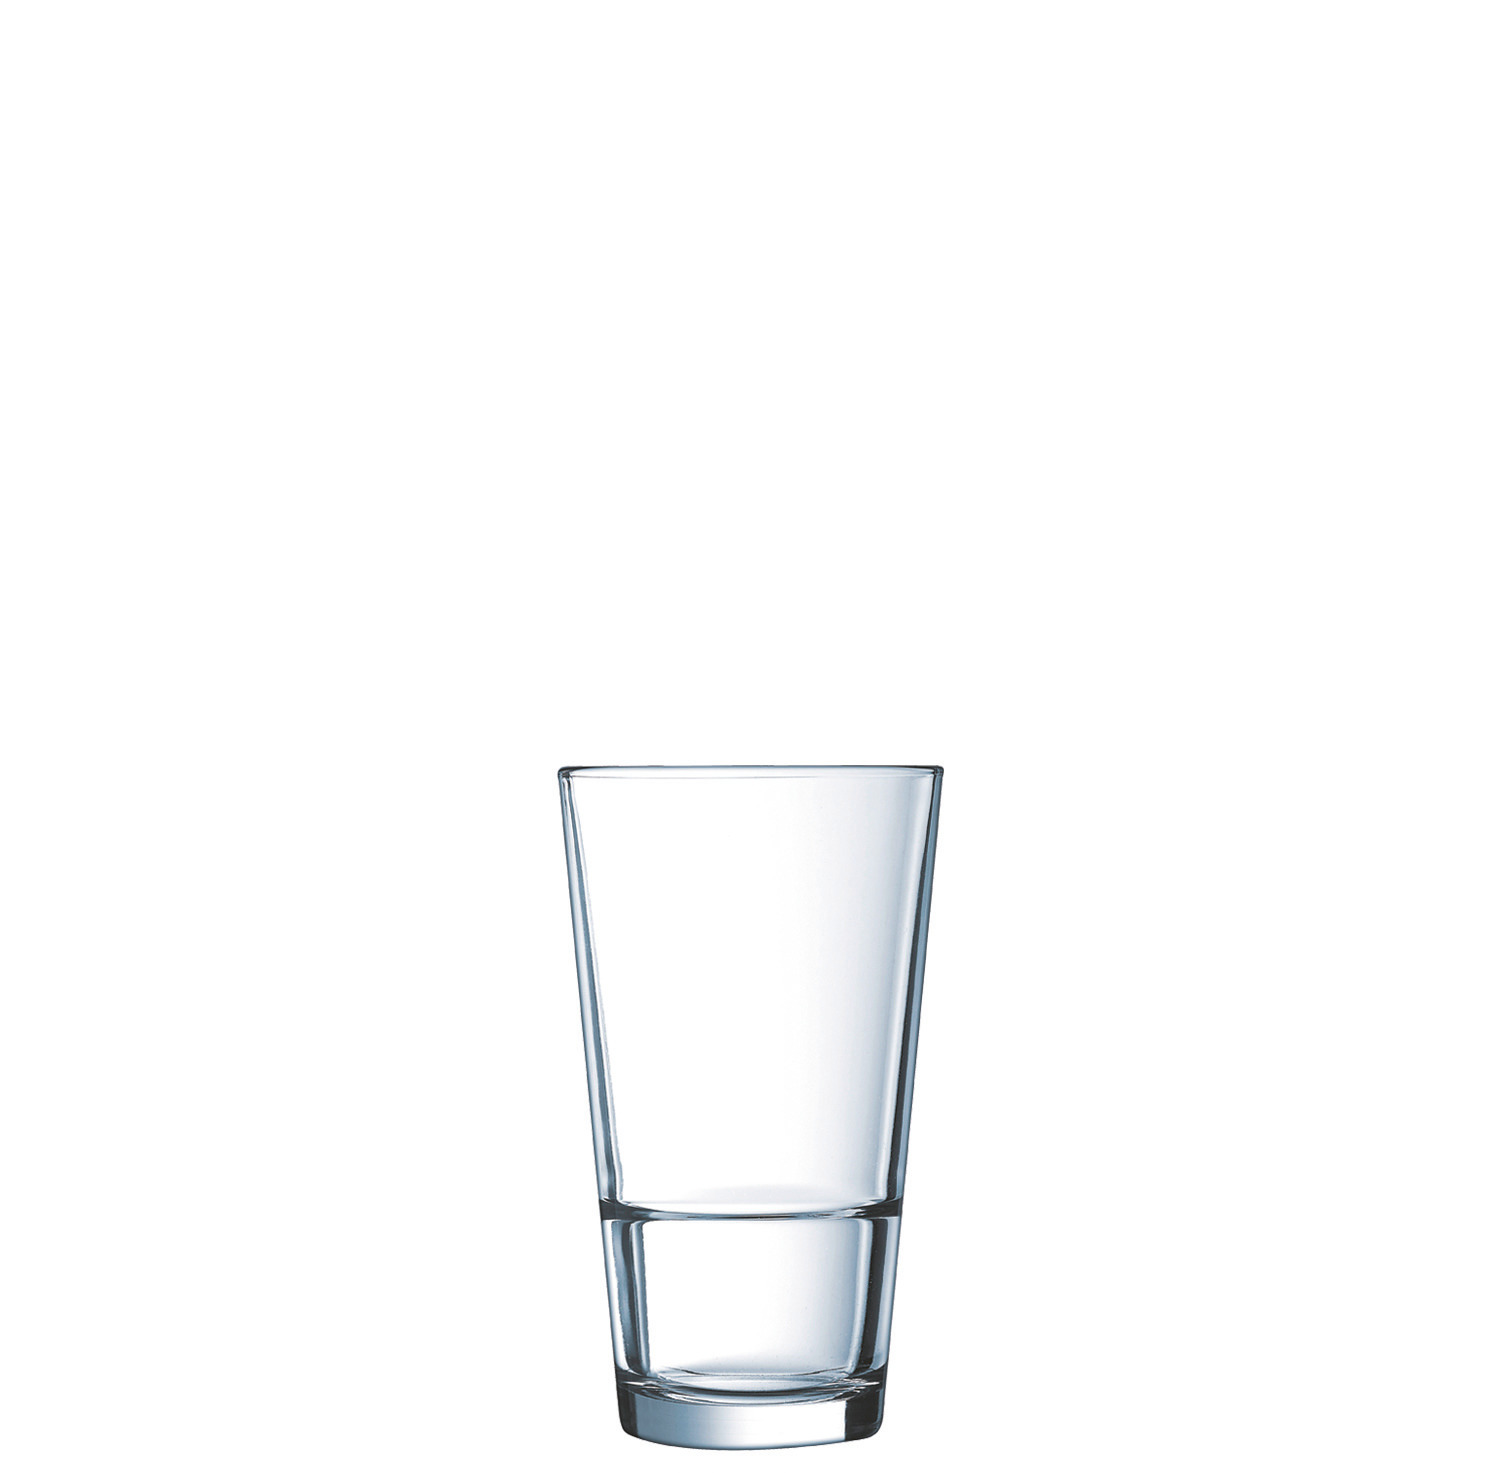 Longdrinkglas "FH35" stapelbar 78 mm / 0,35 l 0,25 /-/ transparent